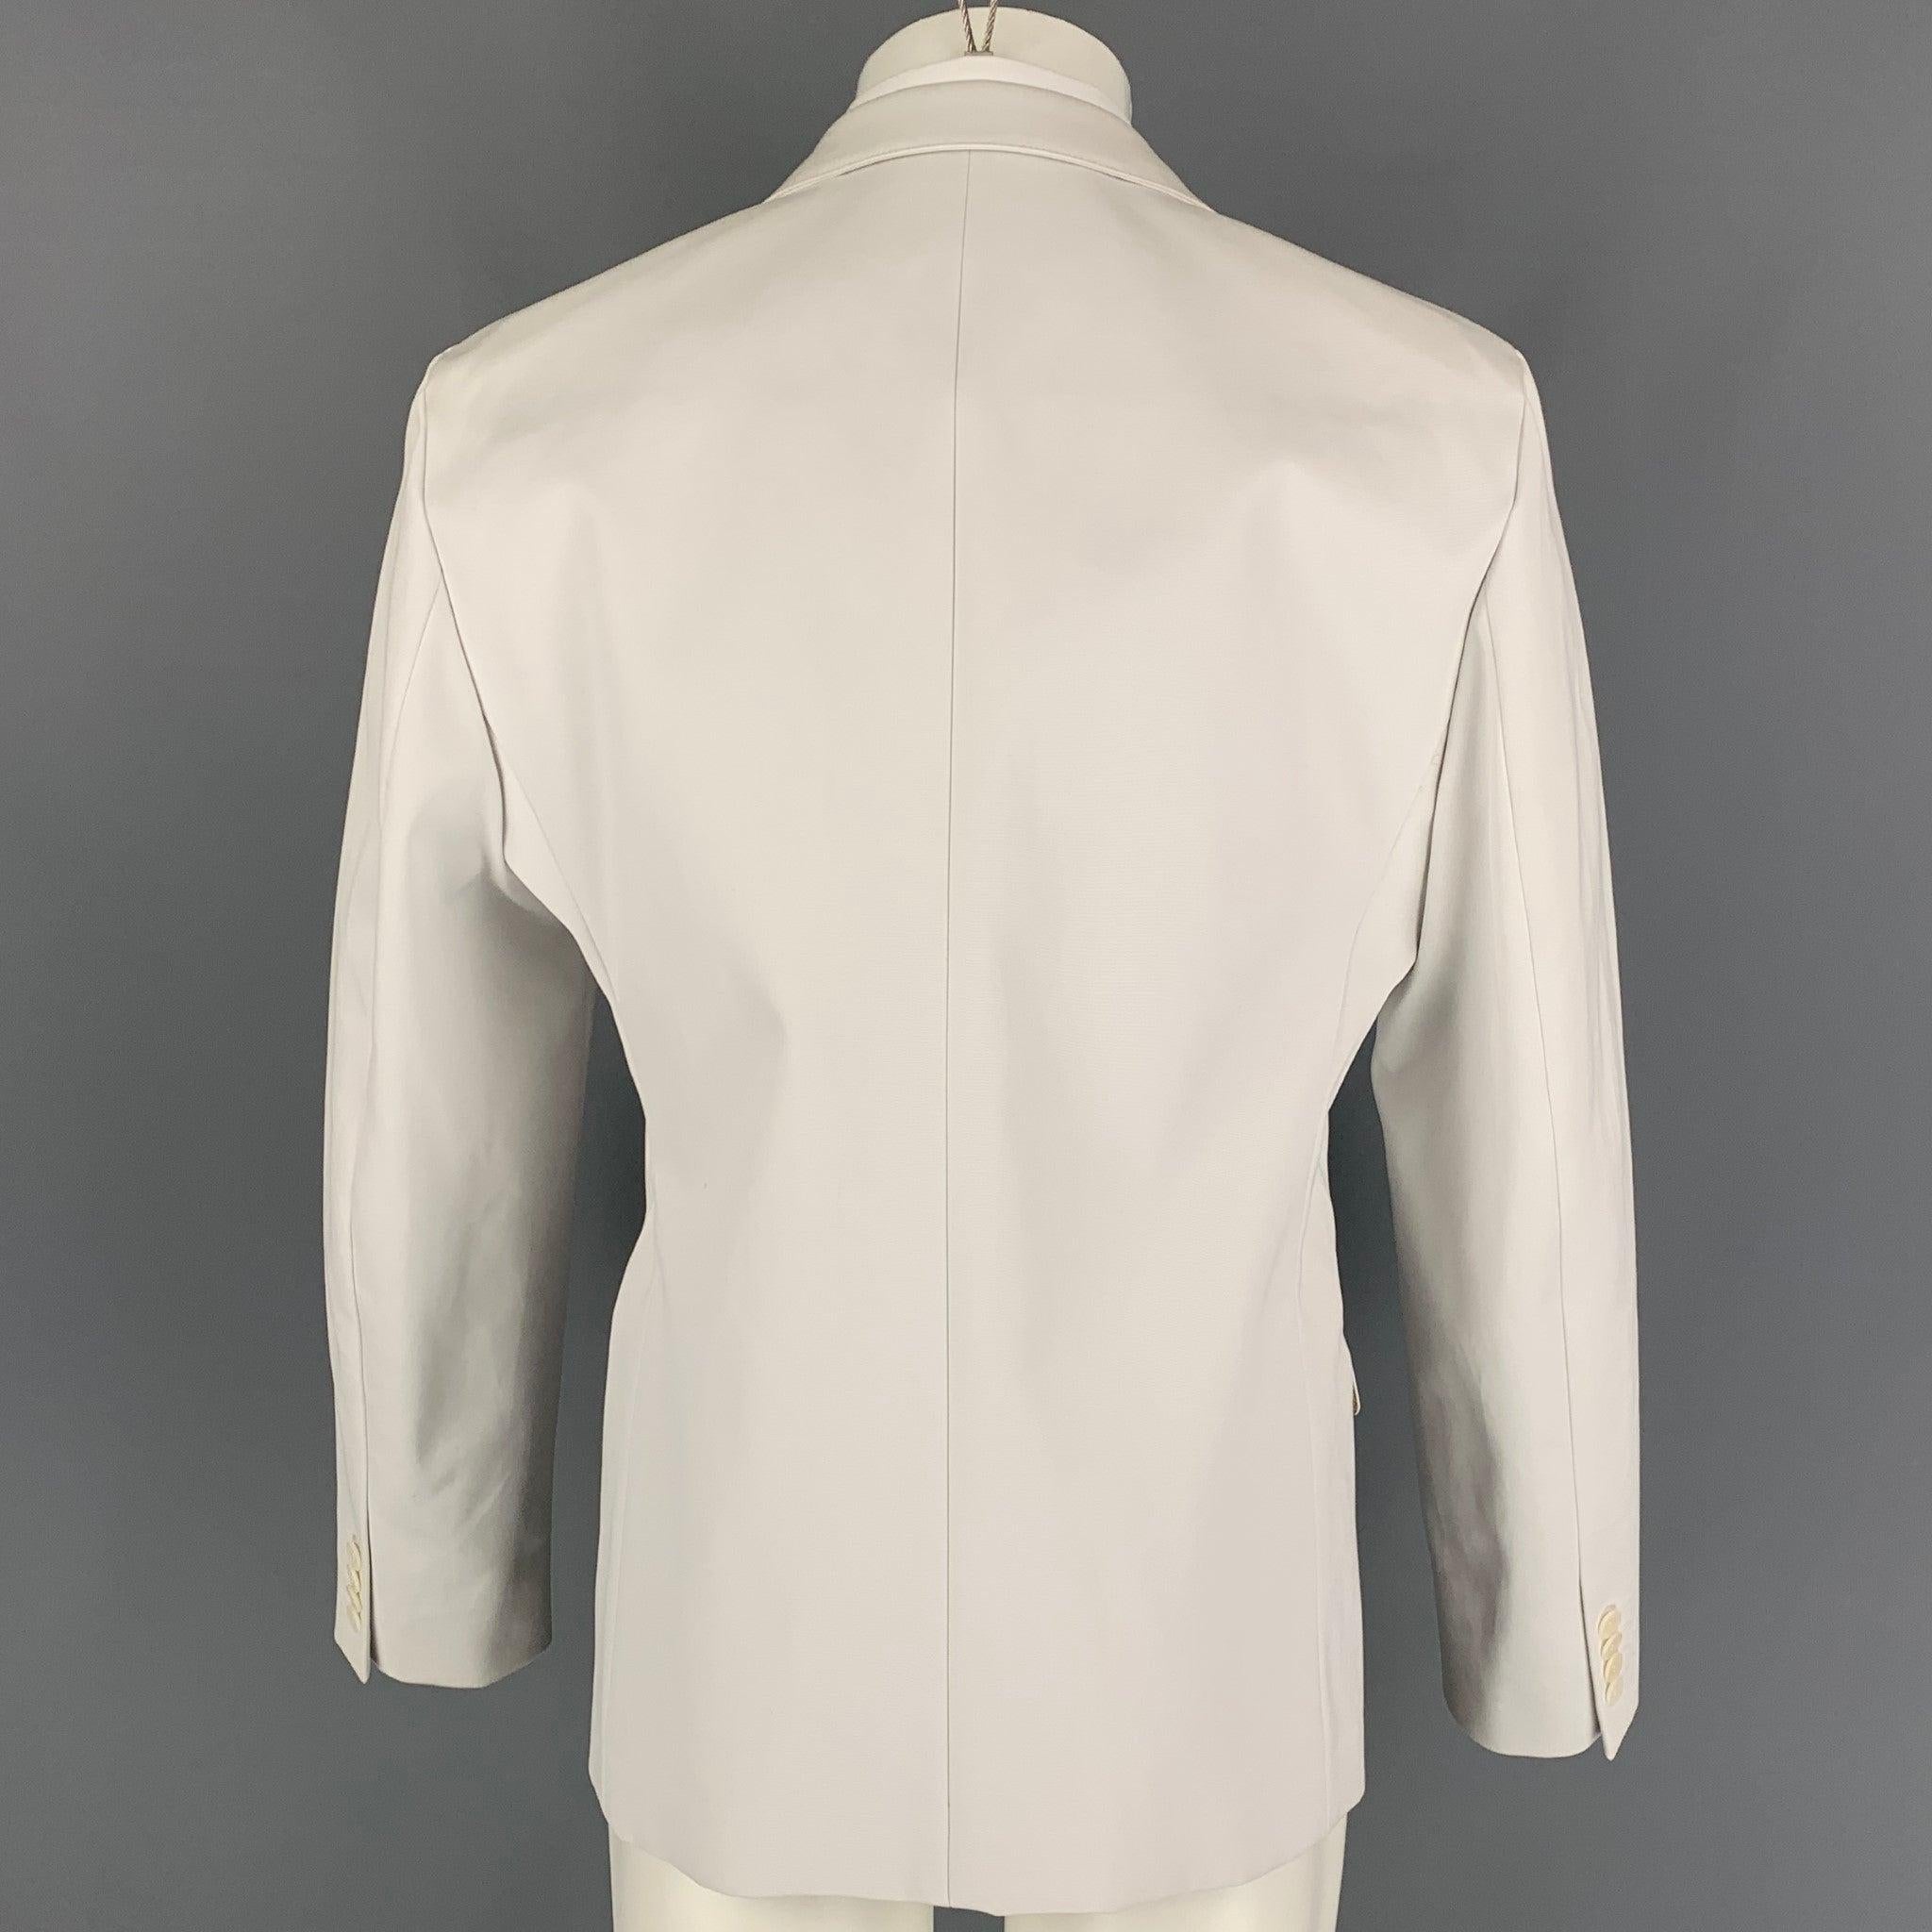 CALVIN KLEIN COLLECTION Size 40 Off White Cotton Notch Lapel Suit For Sale 1